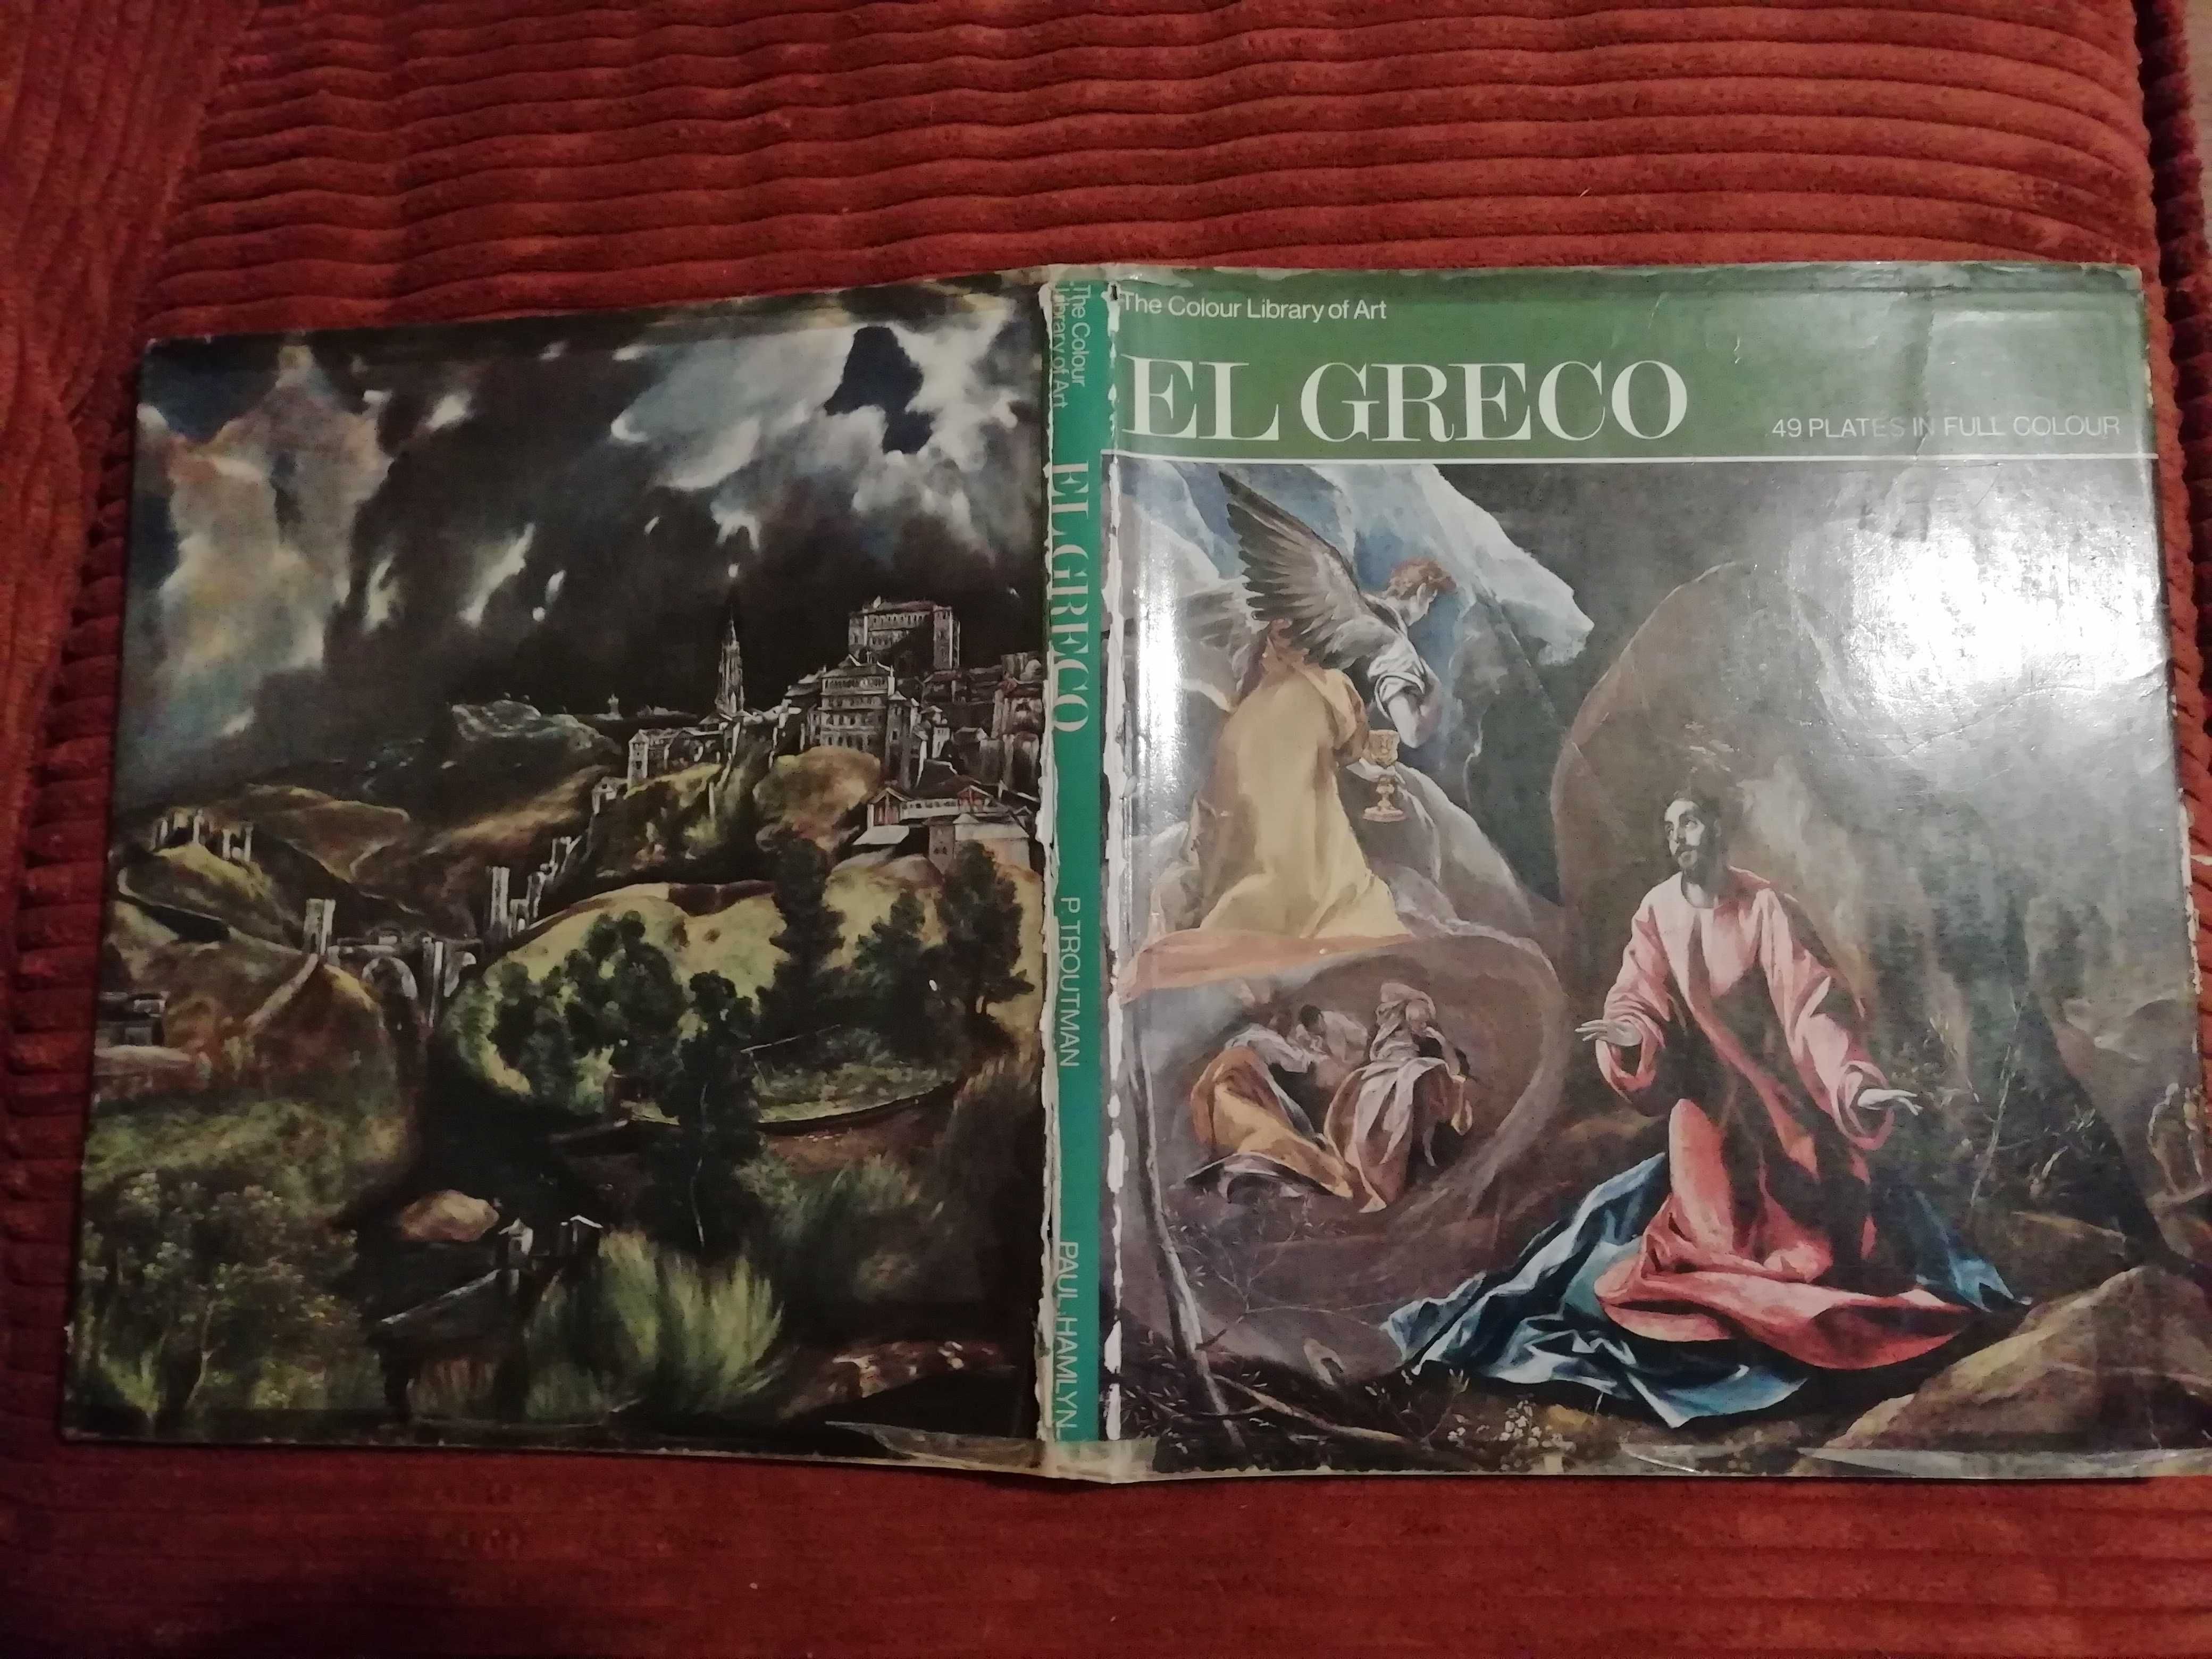 Албум с репродукции  на испанския художник EL GRECO.